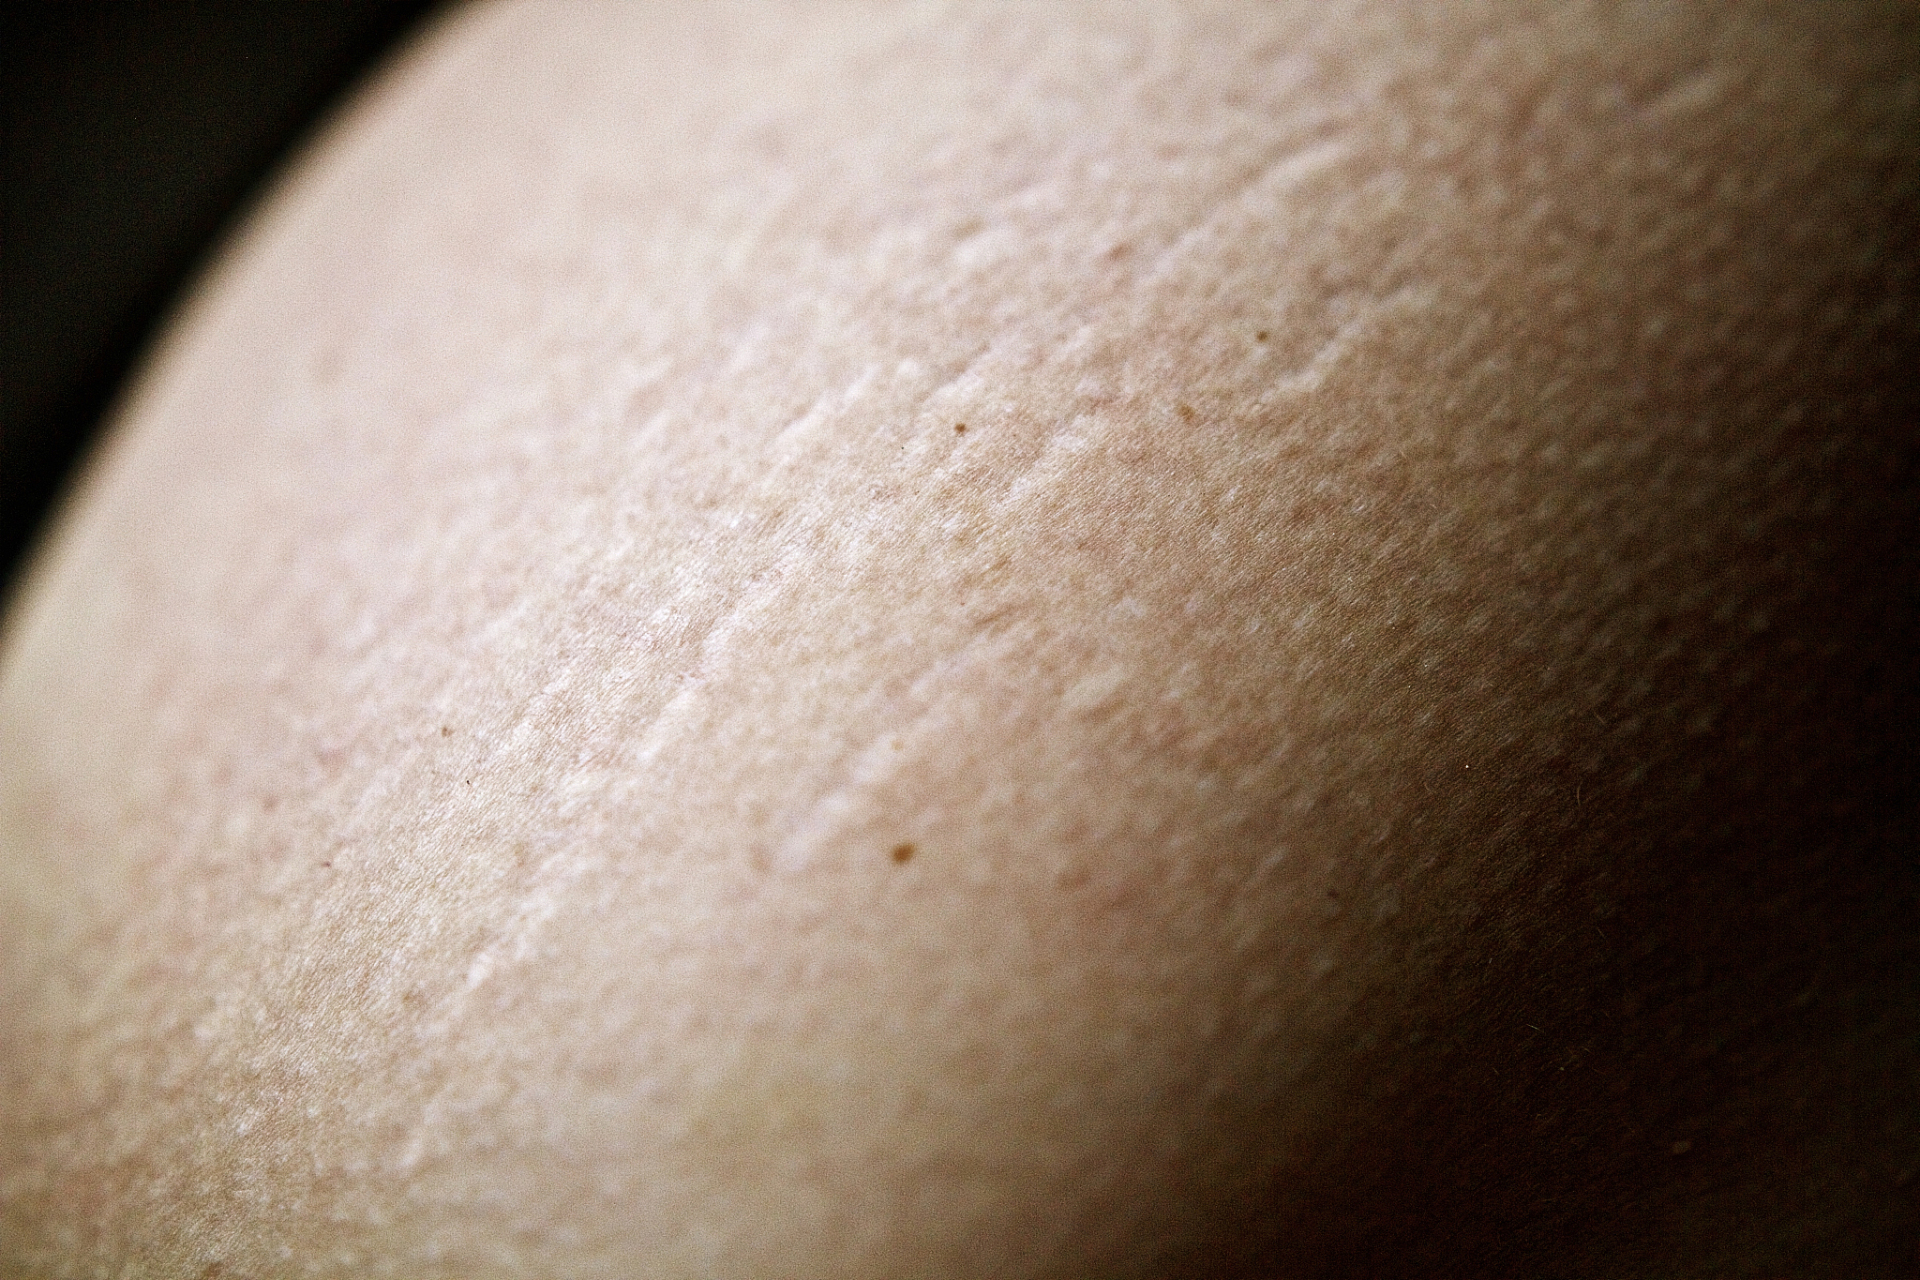 生长纹,也被称为膨胀纹或萎缩纹,是皮肤上出现的一种纹路,通常出现